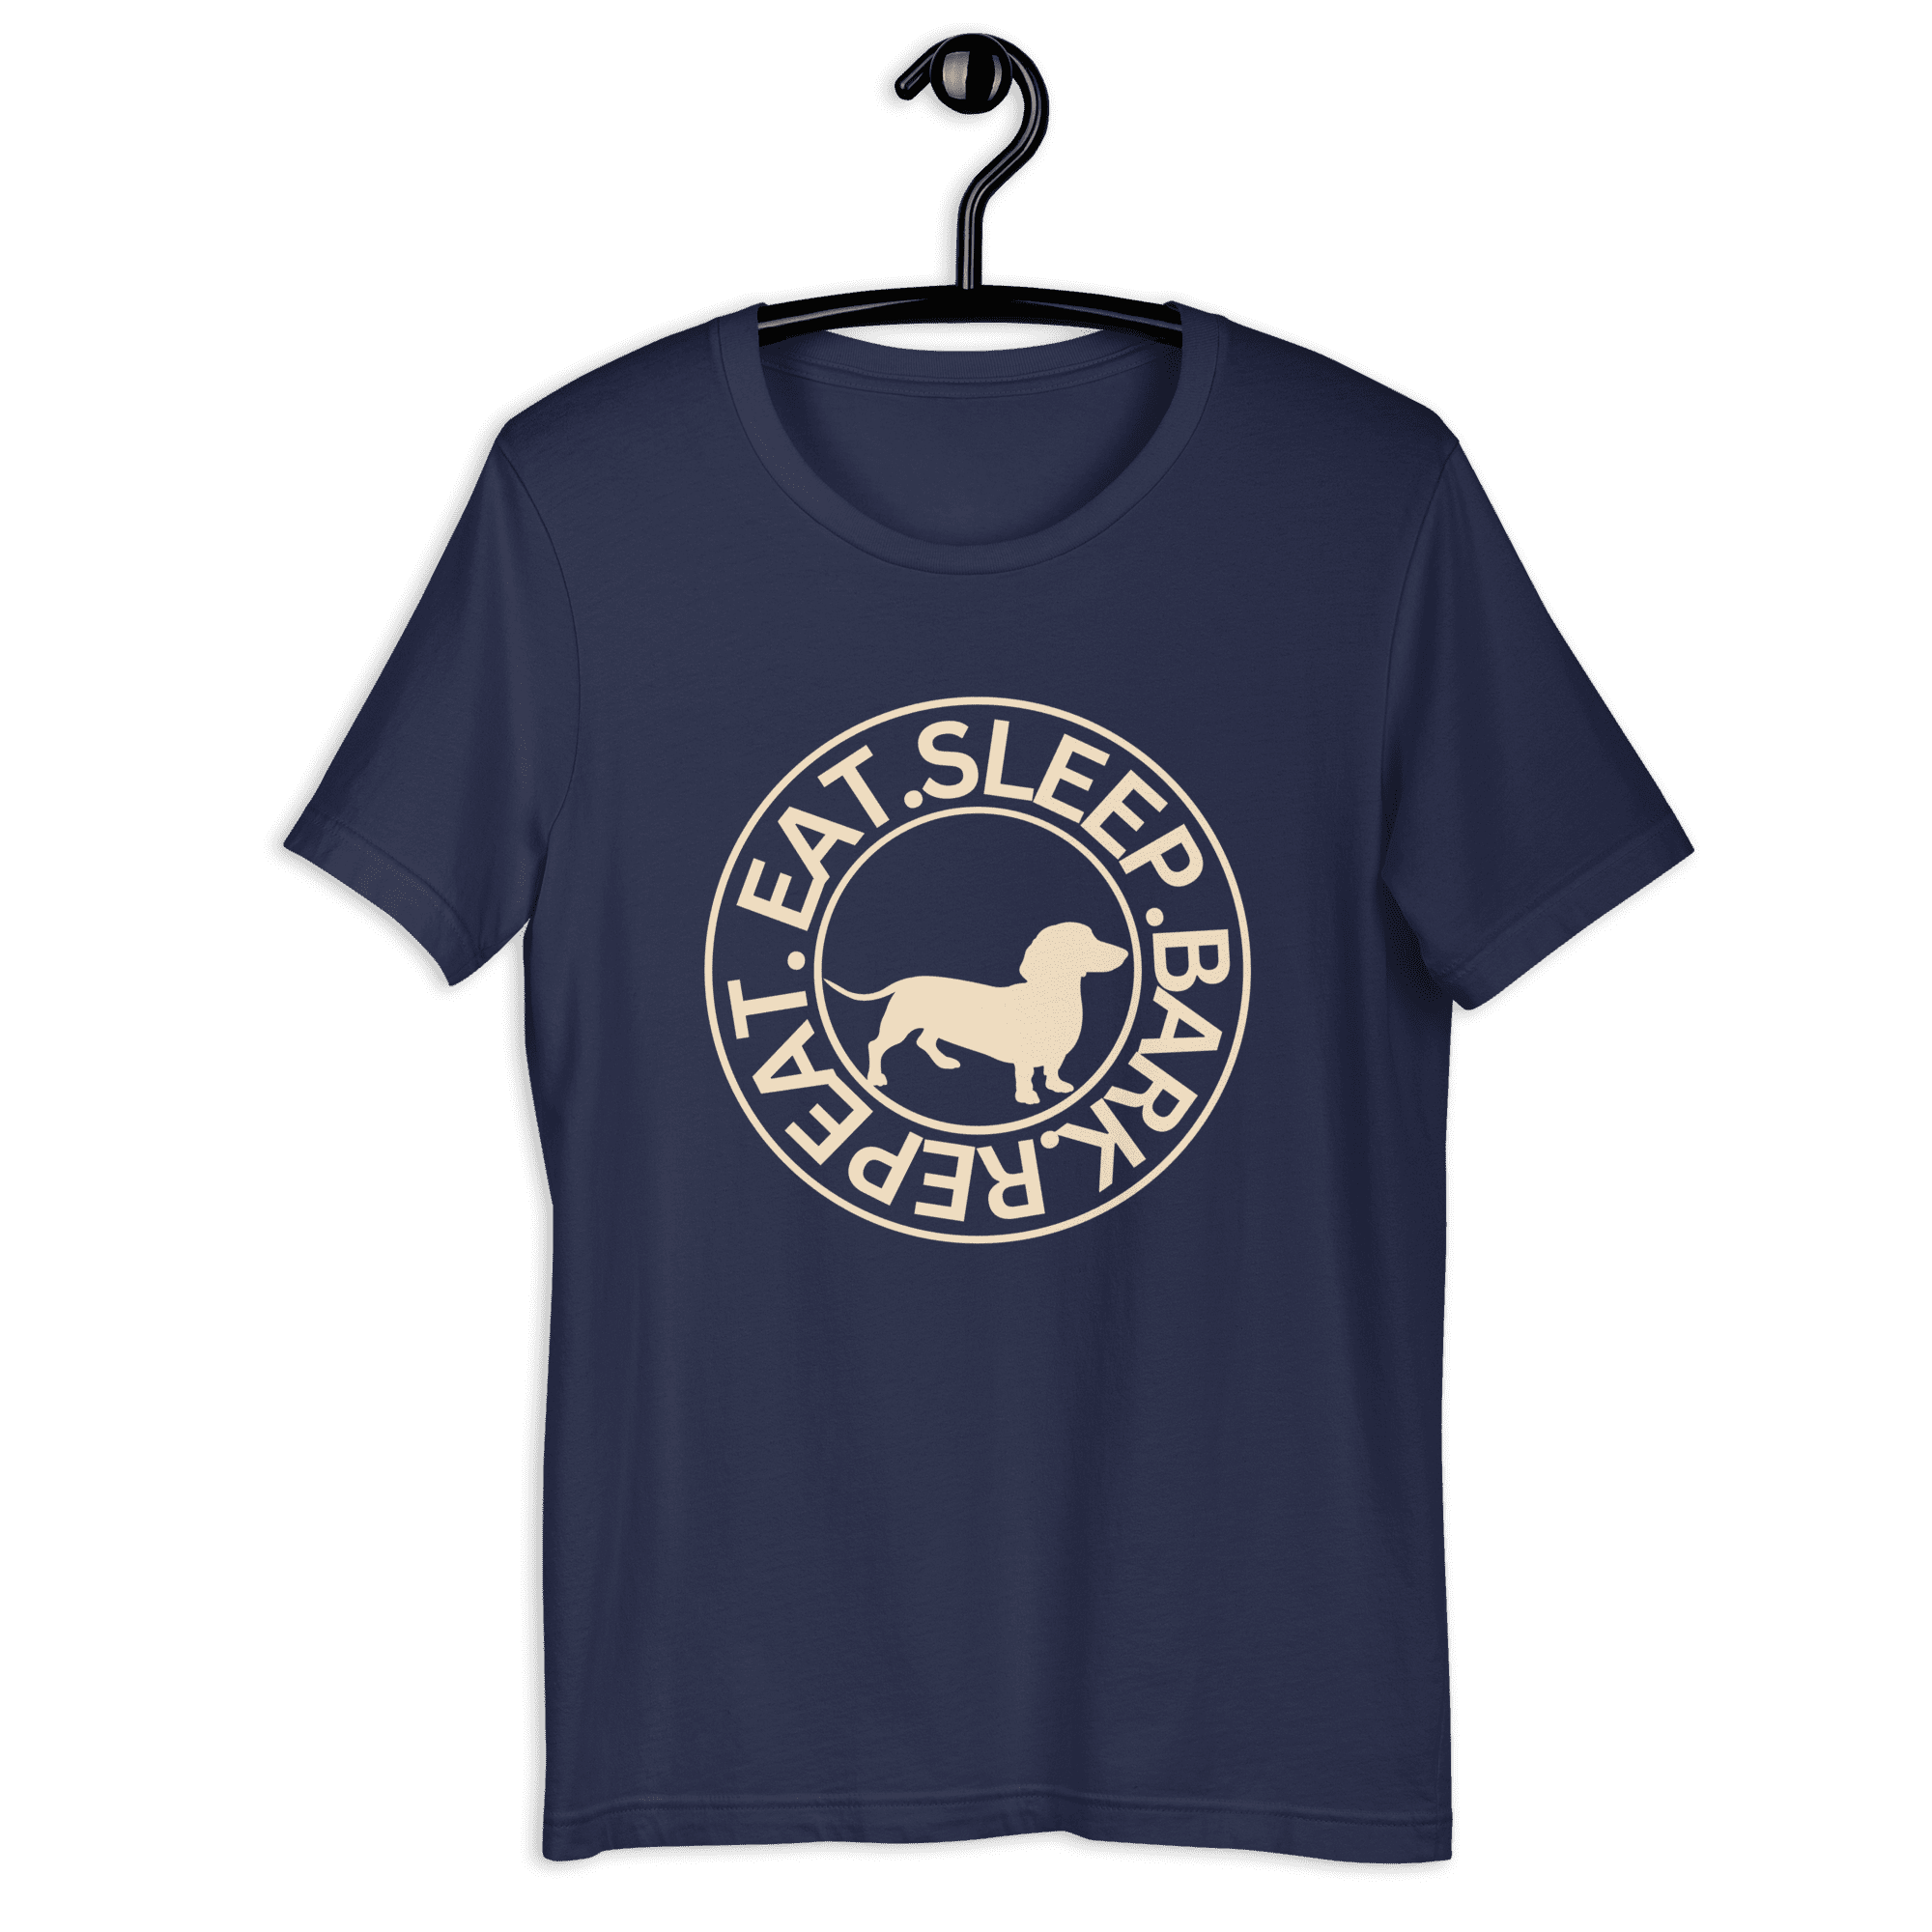 Eat Sleep Bark Repeat Transylvanian Hound (Erdélyi Kopó) Unisex T-Shirt. Navy Blue